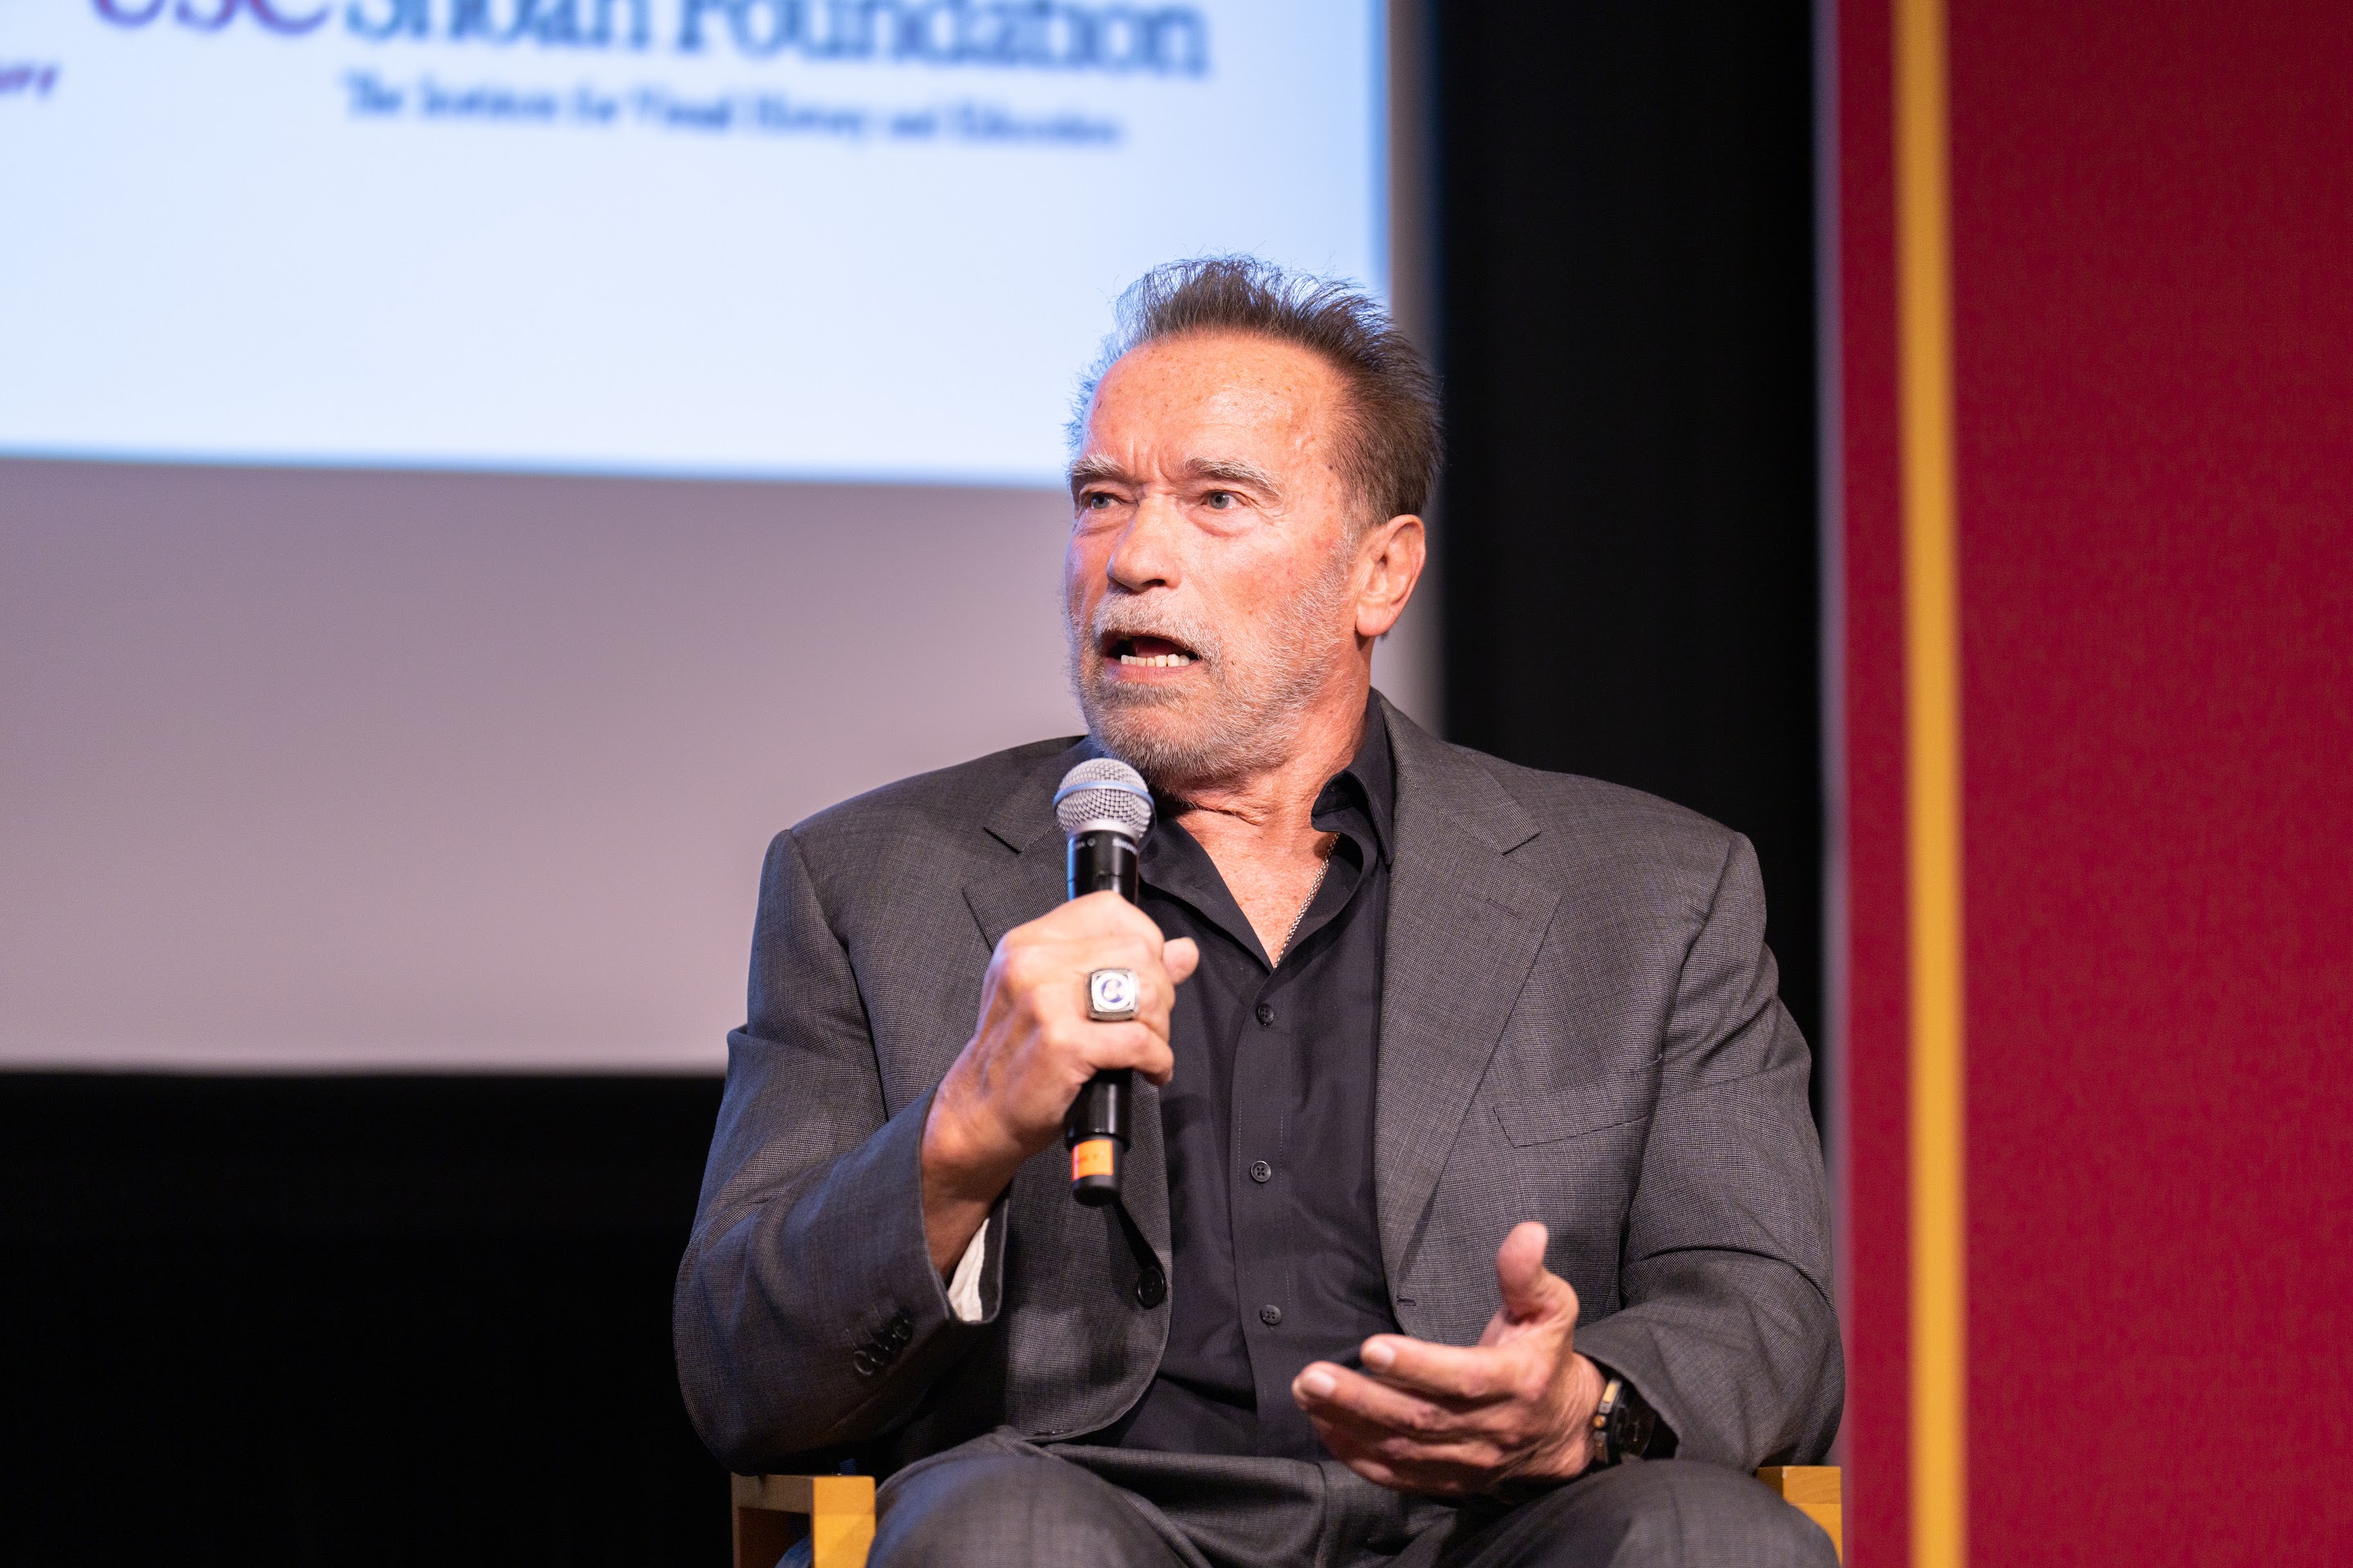 Arnold Schwarzenegger speaking at USC